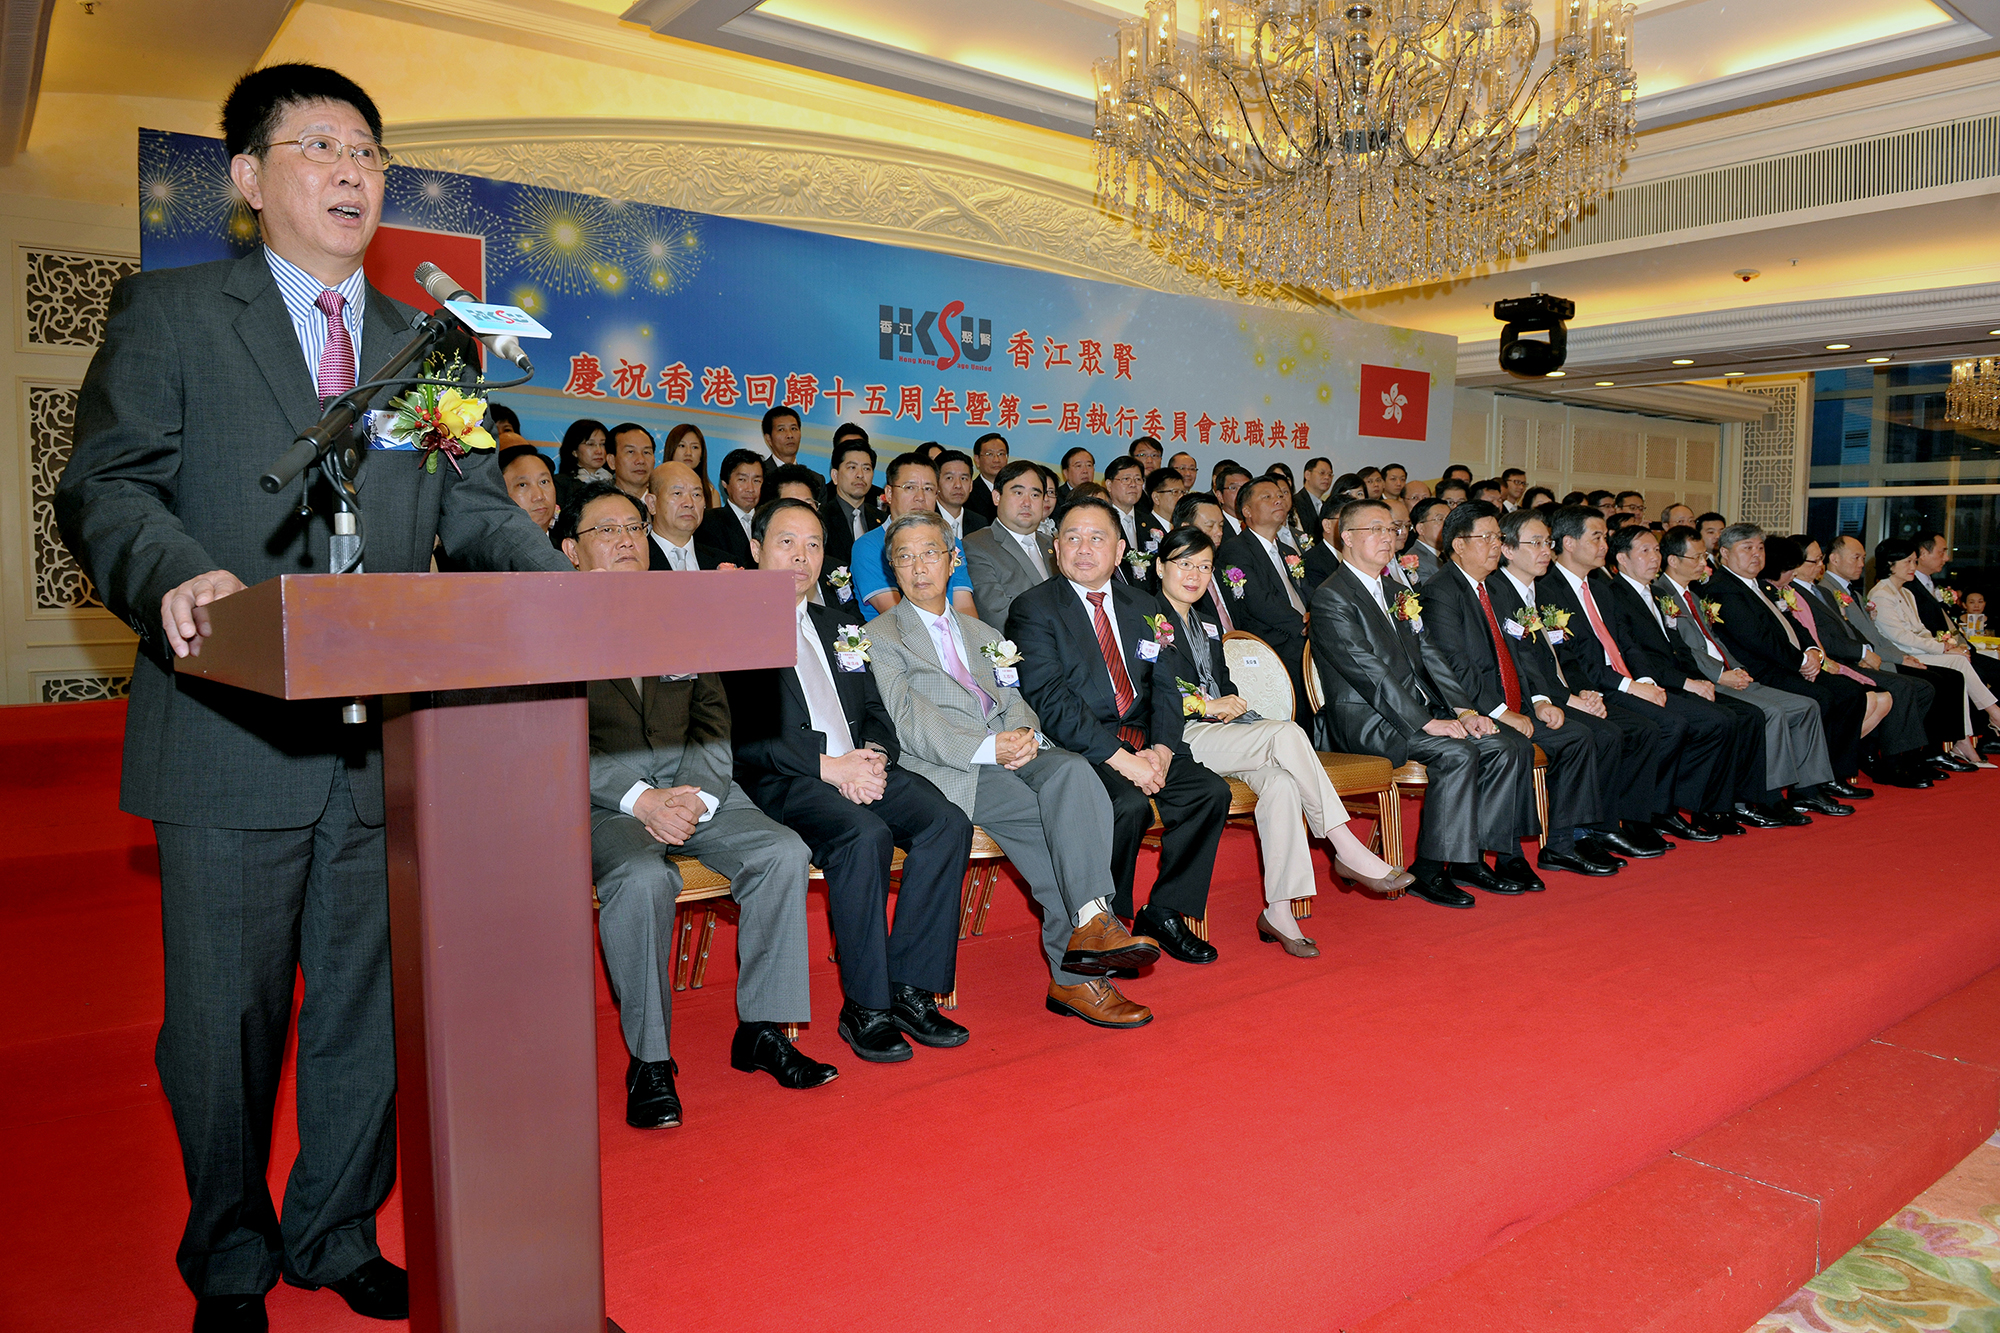 慶祝香港回歸十五周年暨第二屆執行委員會就職典禮